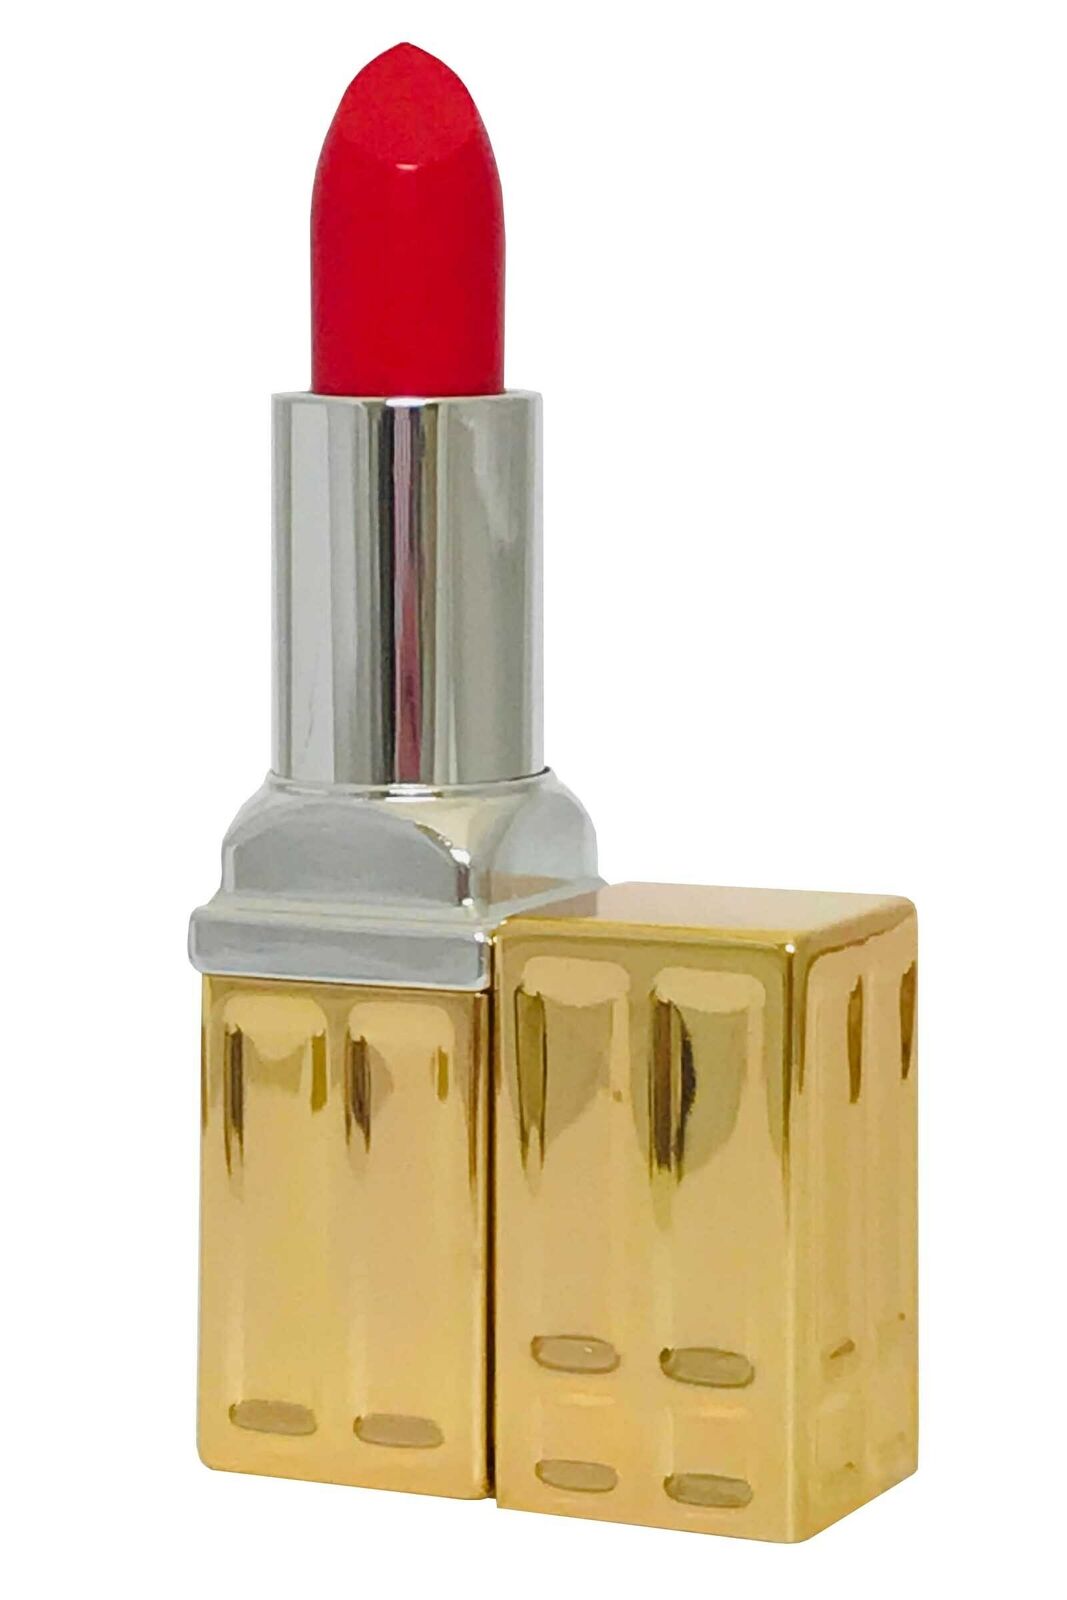 Elizabeth Arden Beautiful Color Moisturizing Lipstick-BeautyNmakeup.co.uk